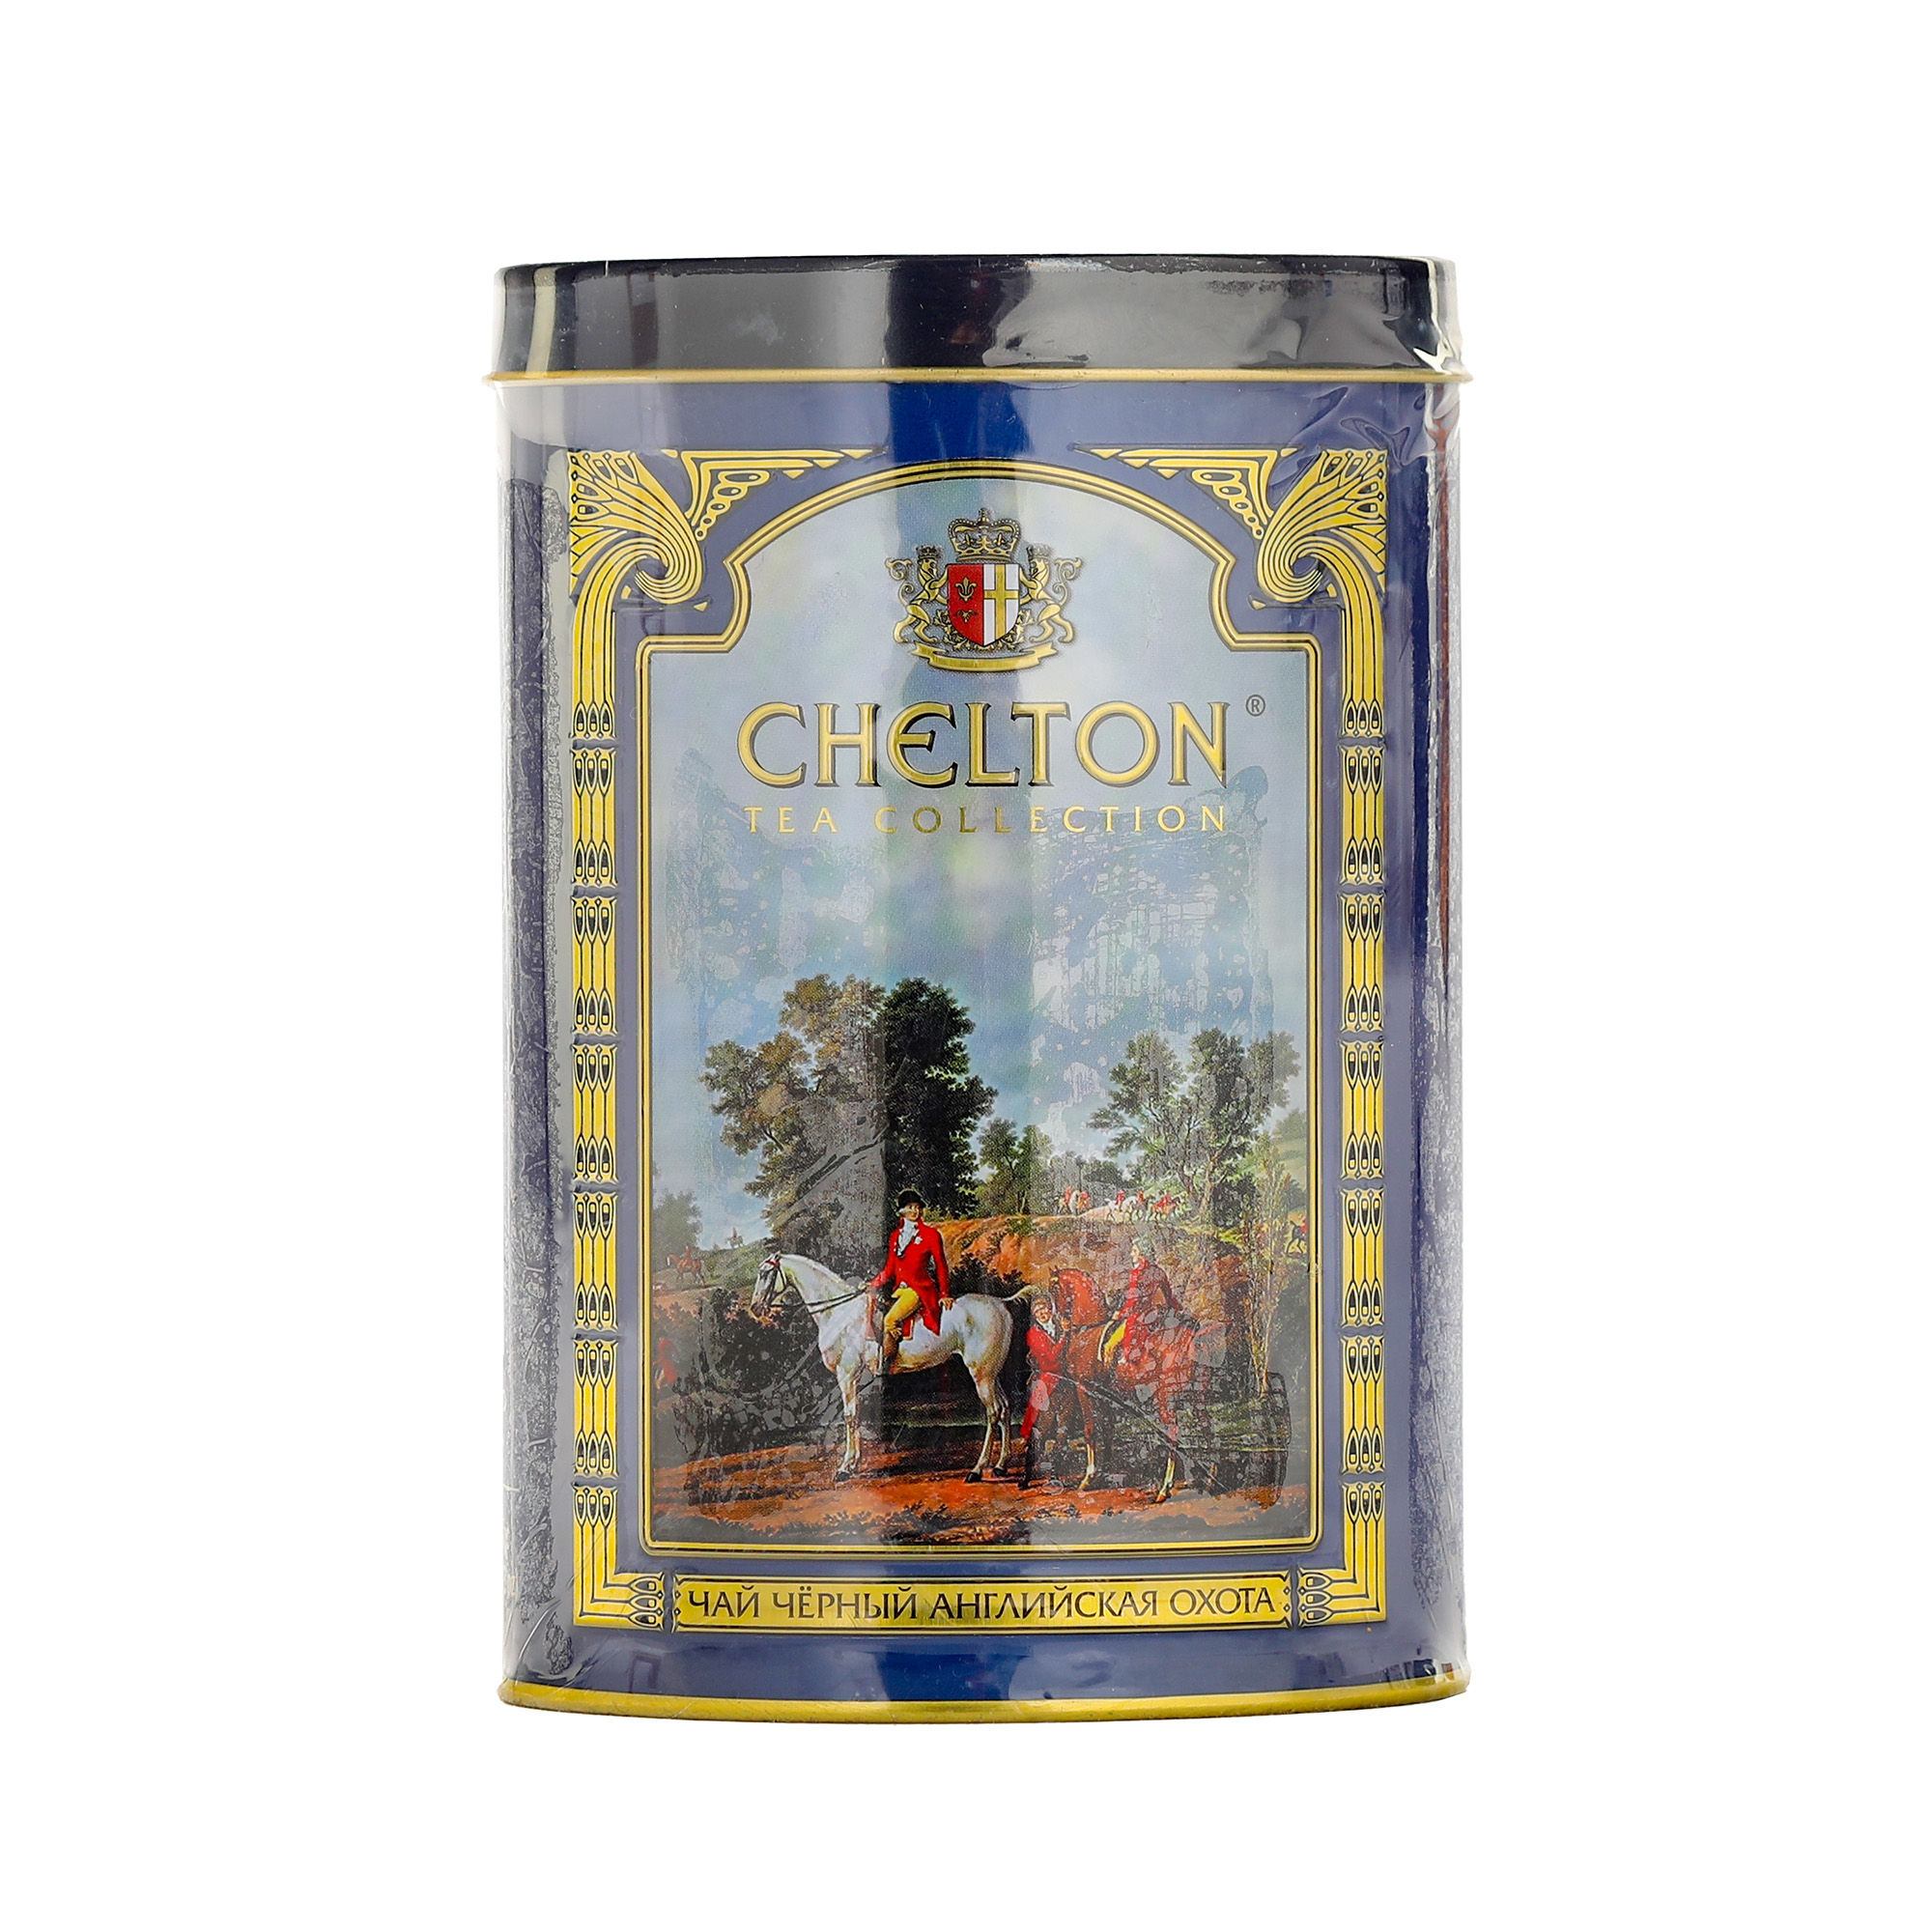 Чай Chelton Английская охота крупнолистовой, 100 г чай крупнолистовой yantra премиум opa 100 г